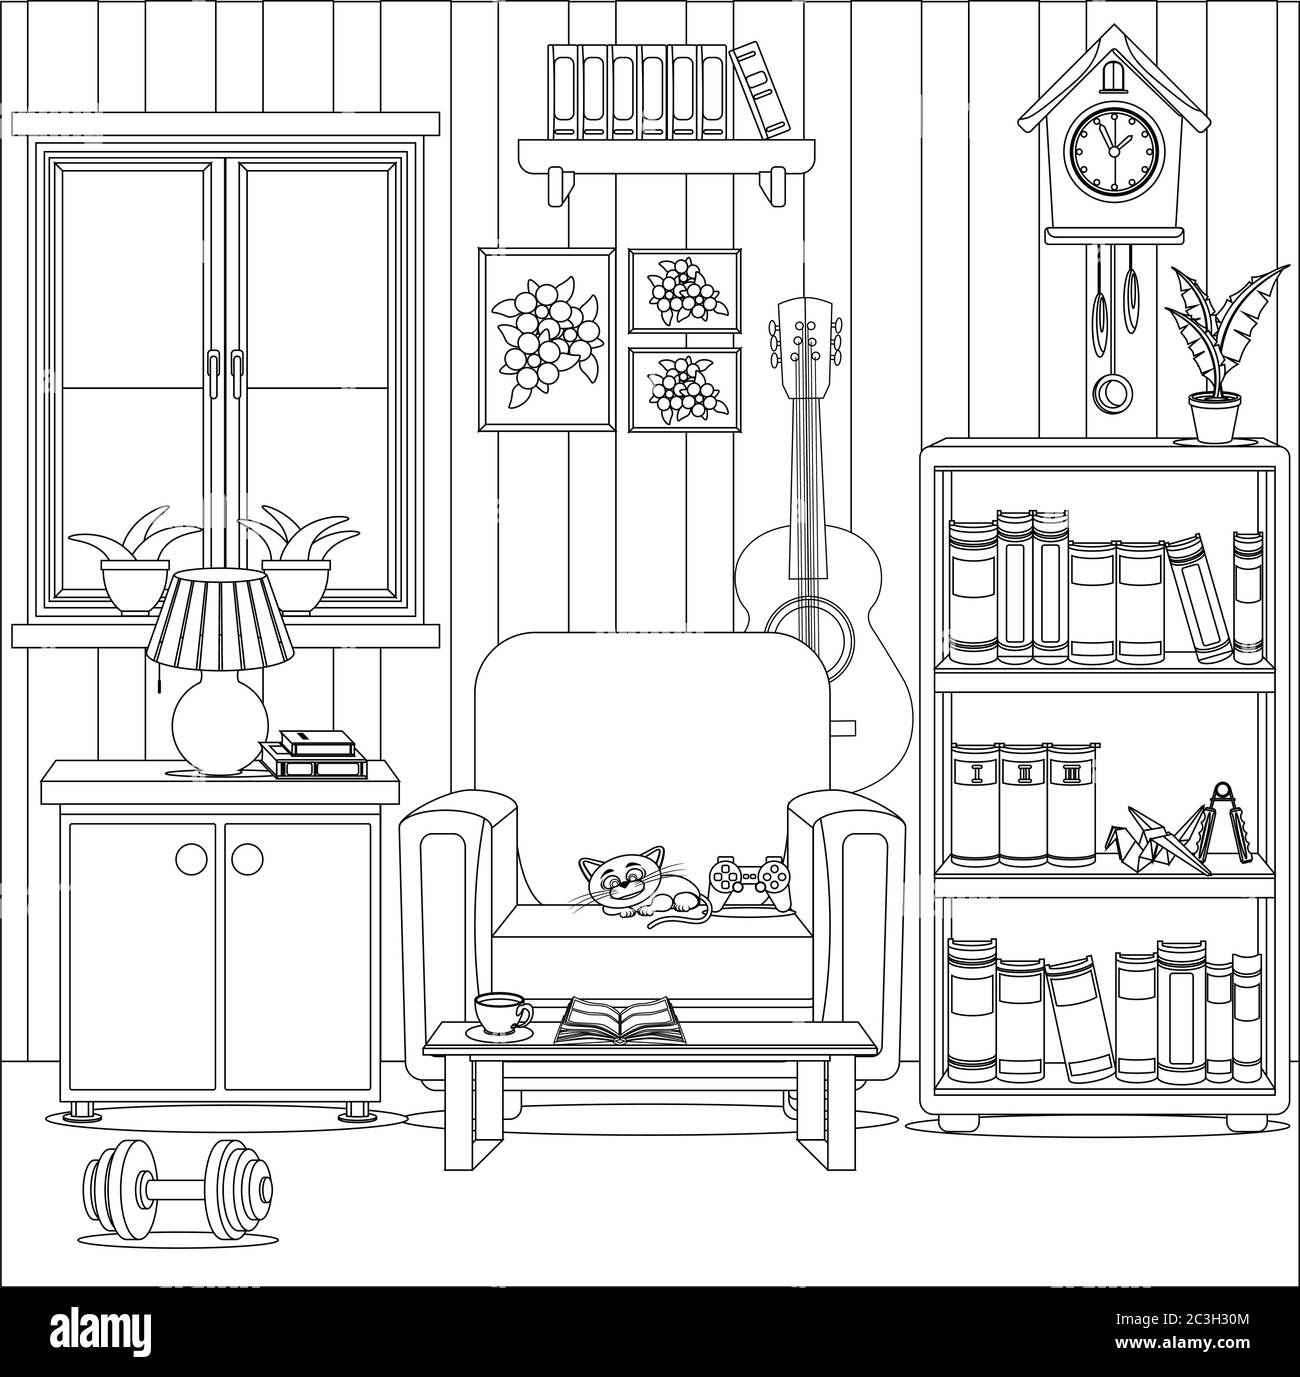 Malbuch für Erwachsene und Kinder zum Thema Interieur und Komfort zu Hause. Ein Zimmer mit Möbeln und Haushaltsgegenständen. Stock Vektor